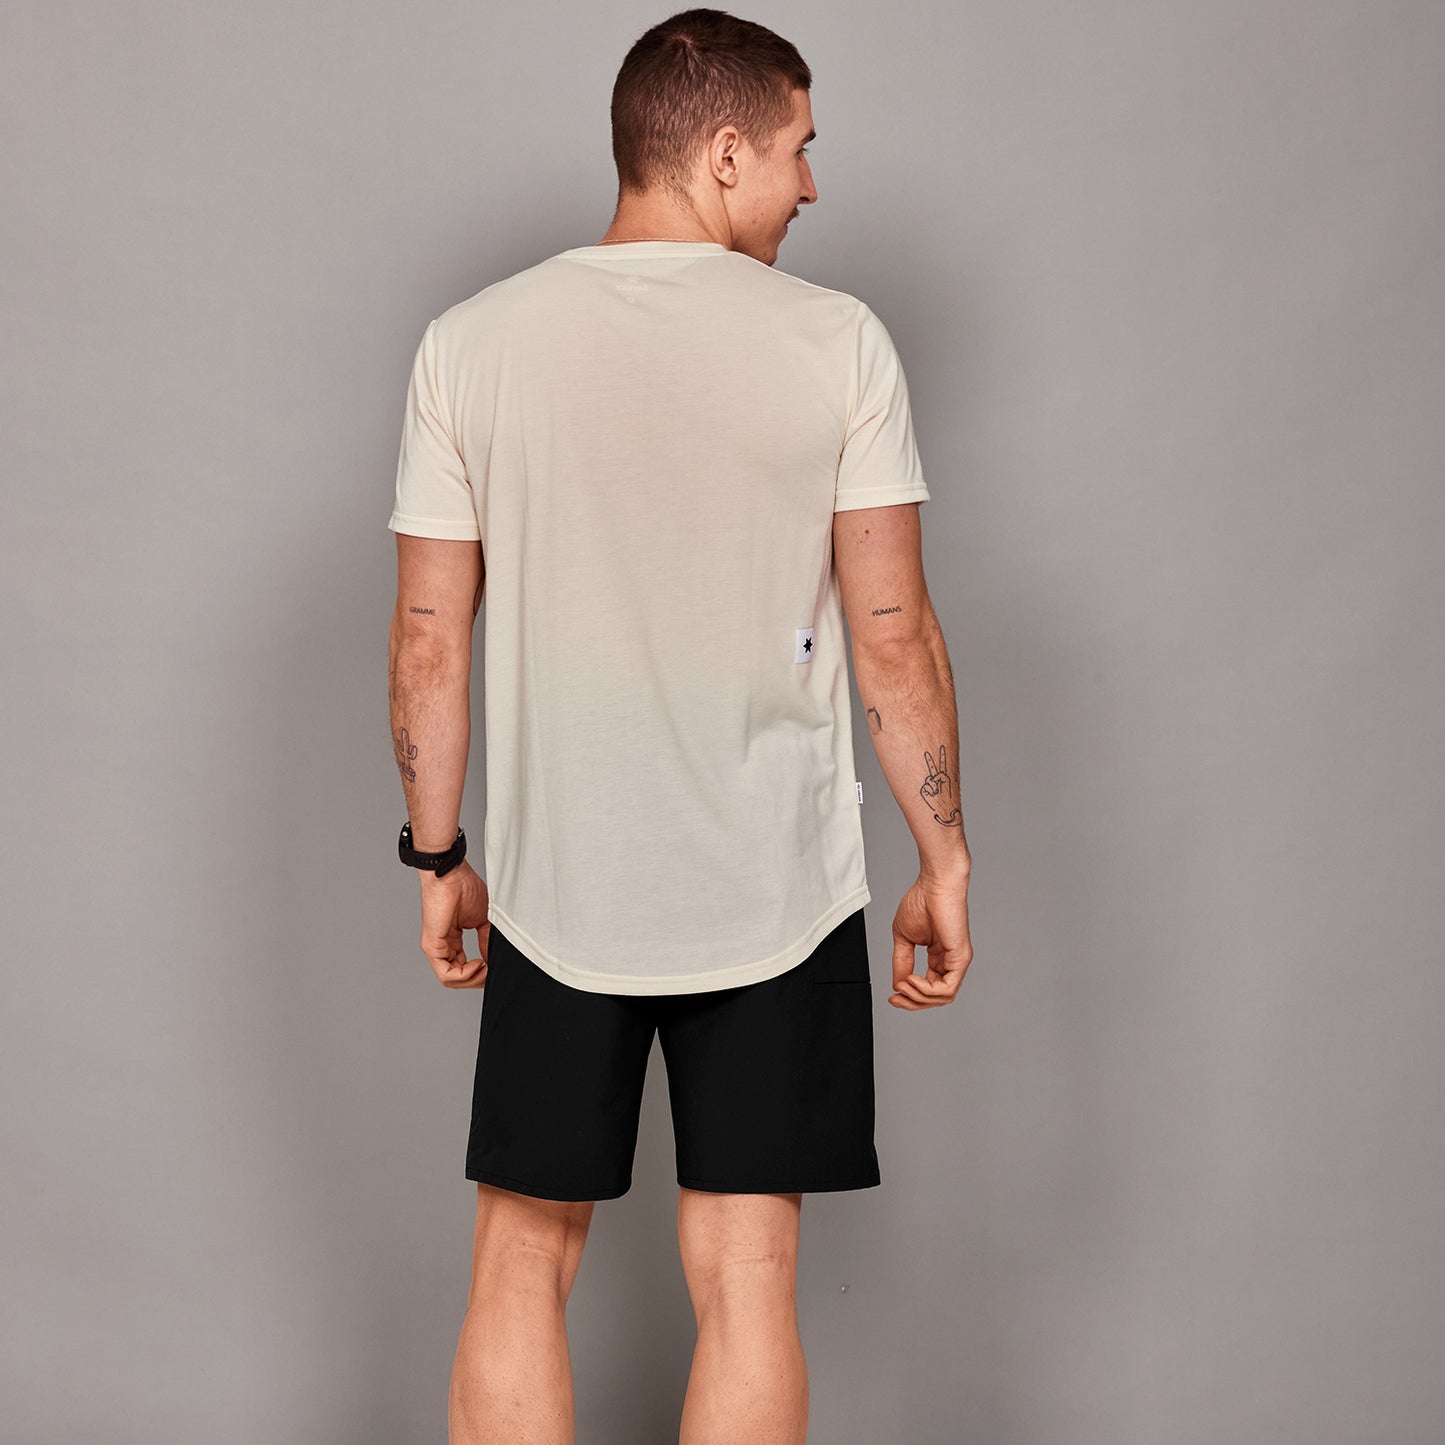 モーションTシャツ XMRSS51c102 Clean Motion T-shirt - White [メンズ]